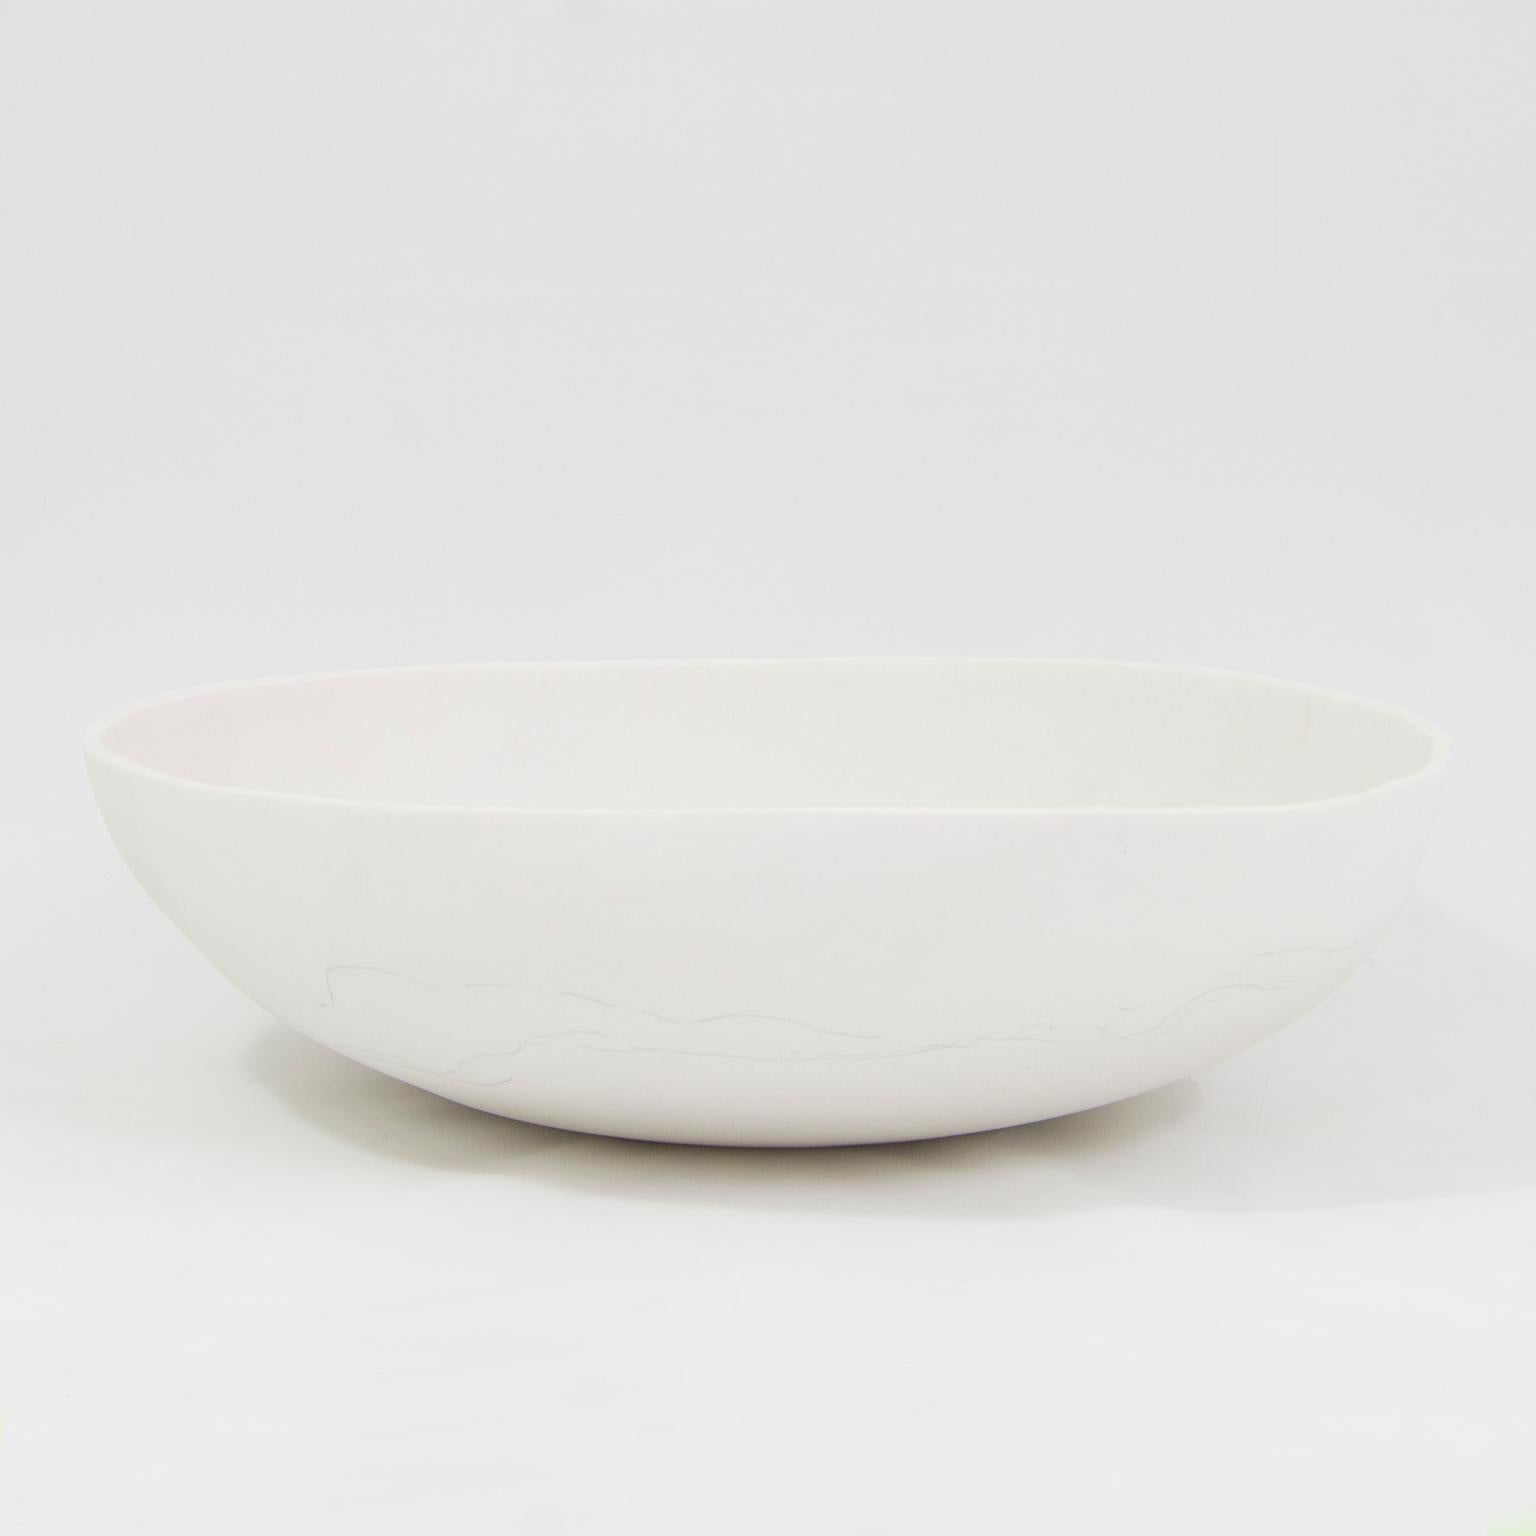 Contemporary Decorative Bowls Matte Black/White Porcelain For Sale 3